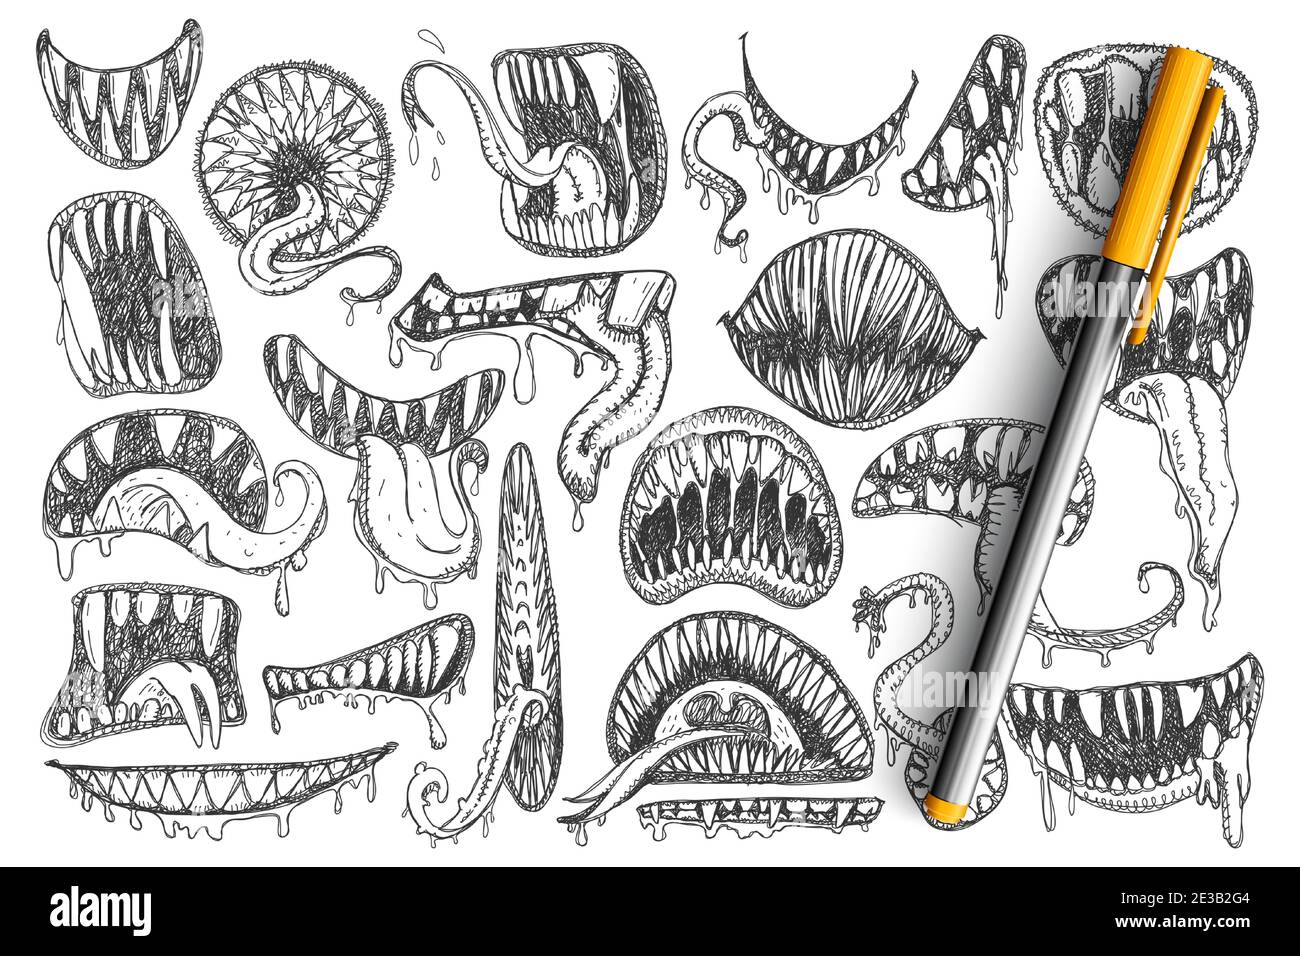 Gruselige Zähne und Mund Doodle Set. Sammlung von Hand gezeichnet gruseligen Mund, Zähne, Zunge als Schlange oder als Tätowierungen isoliert auf transparentem Hintergrund Stock Vektor